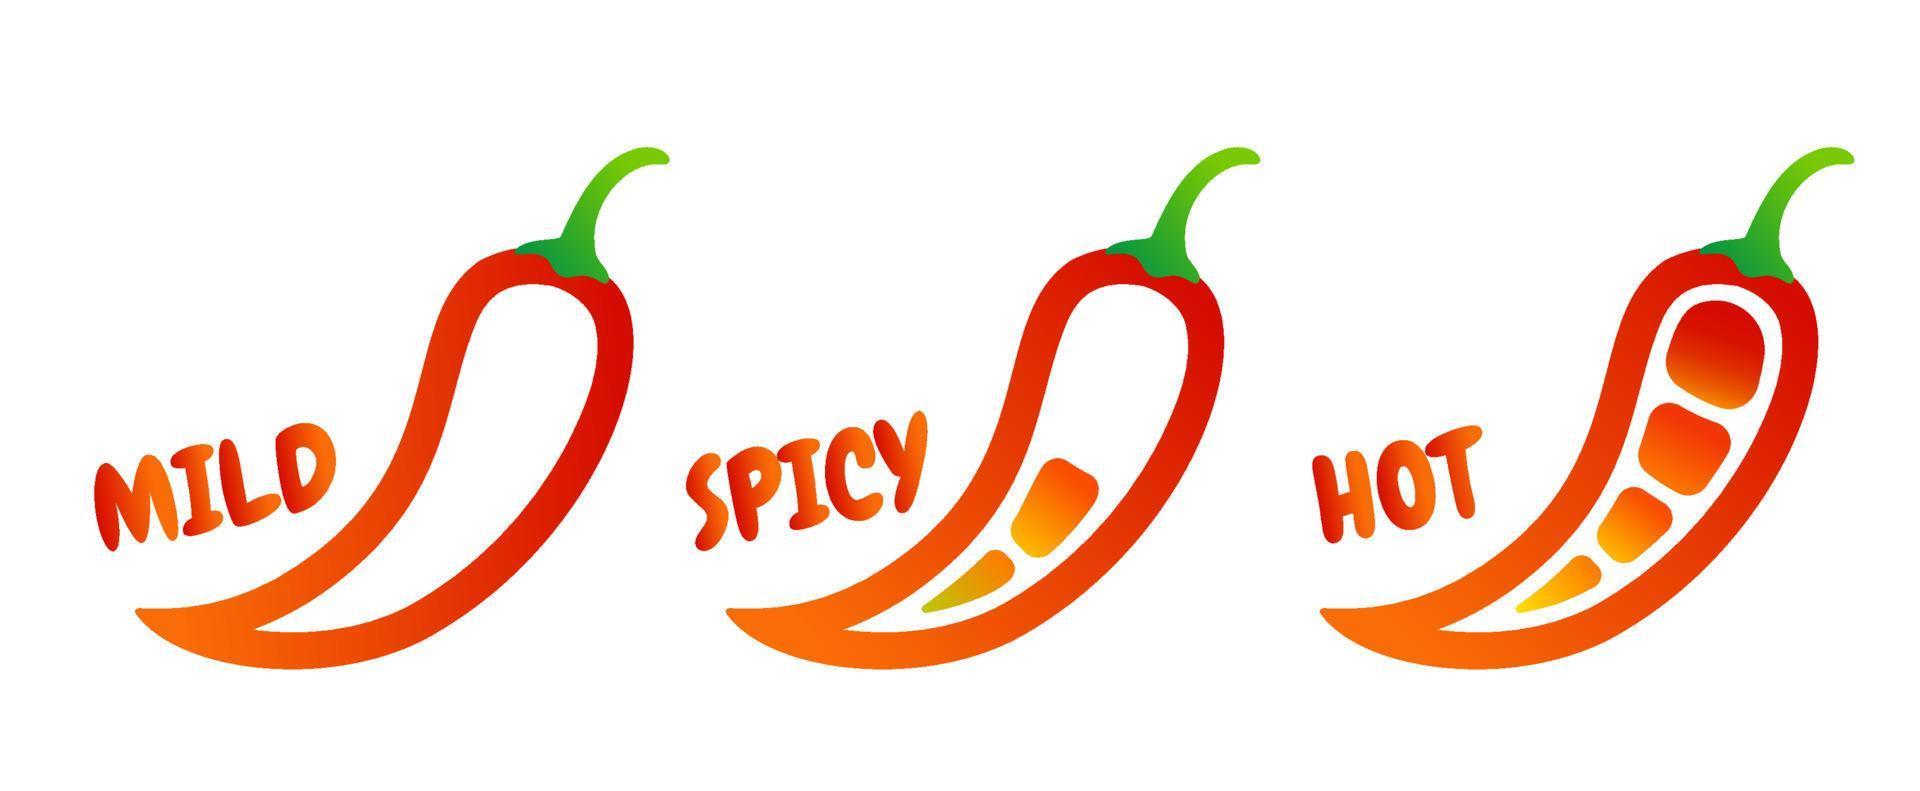 vettore illustrazione di peperoncino Pepe nel diverso livelli. vettore impostato icone di rosso chili Pepe. dolce, mezzo e caldo peperoncino salsa.